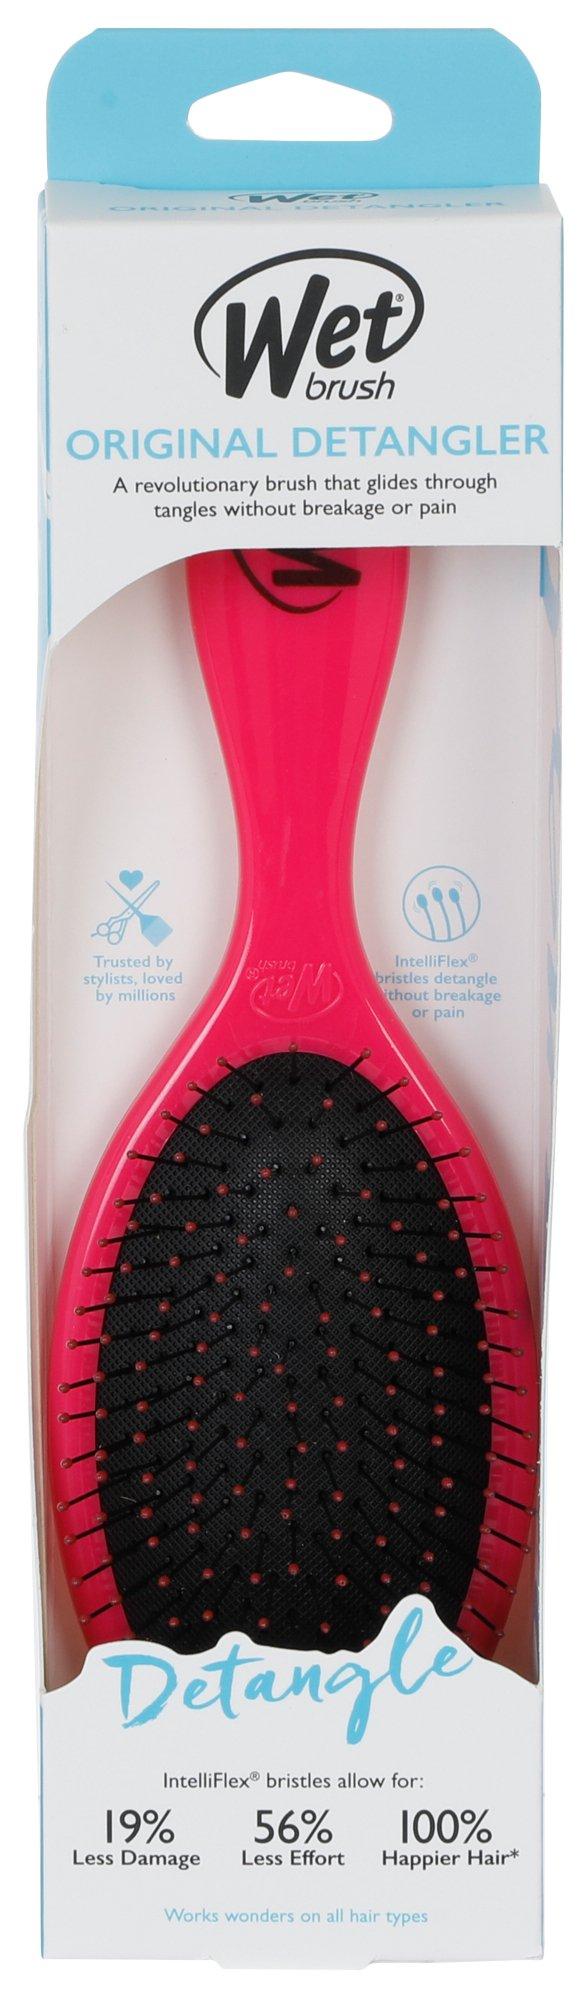 Original Detangler Hair Brush